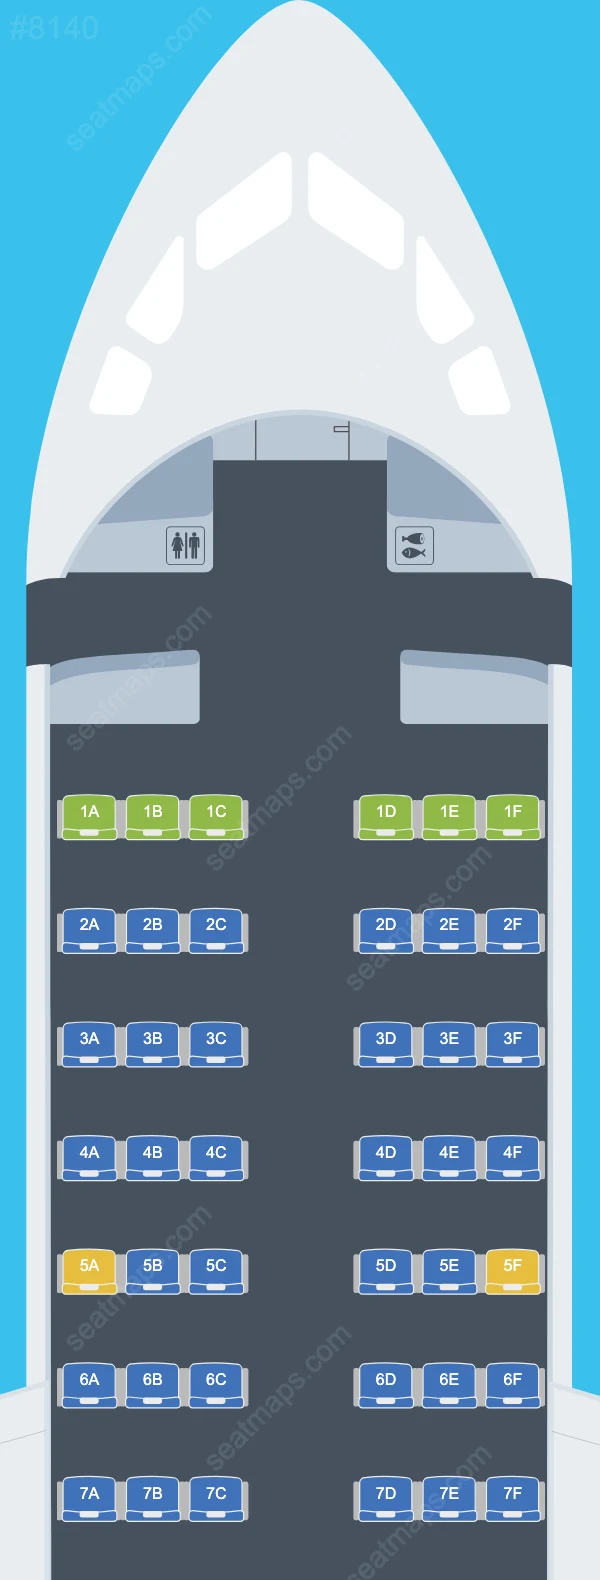 Aerovías DAP BAe 146 Seat Maps 146-200